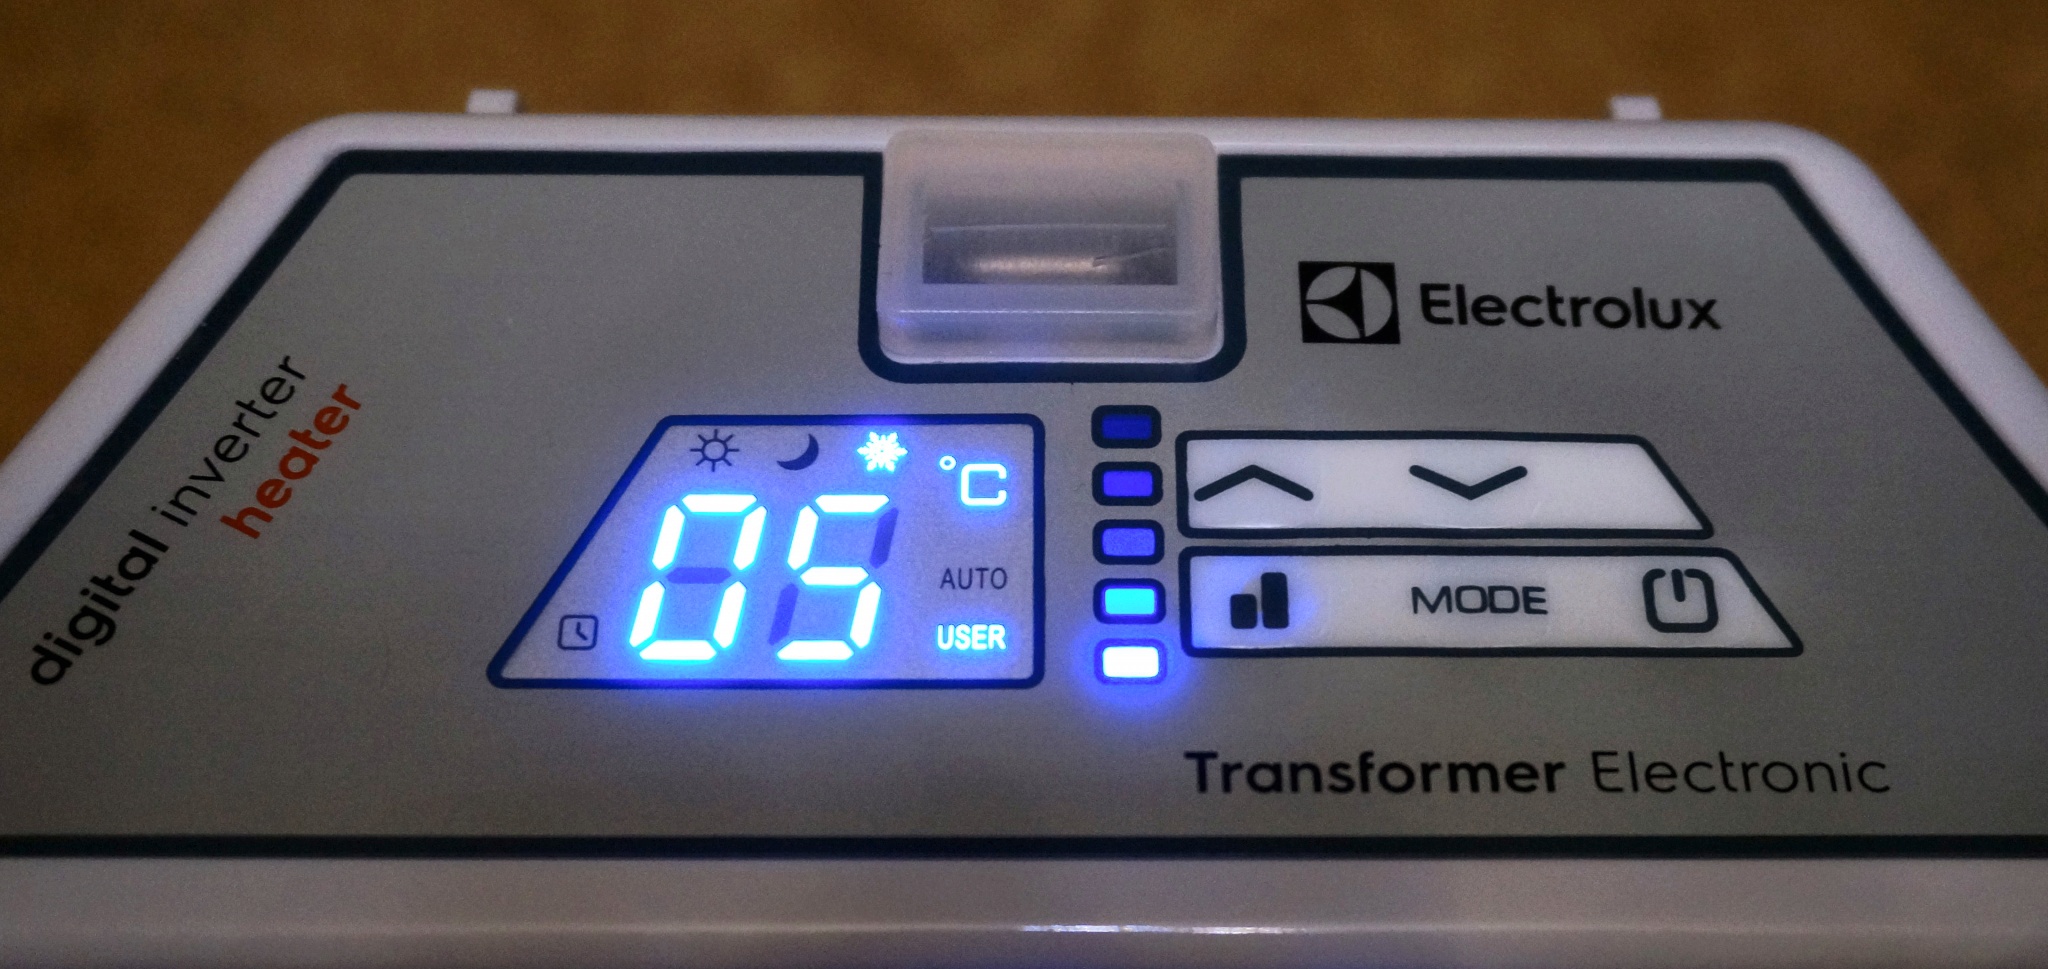 Блок управления конвектора Electrolux Transformer Digital Inverter 3.0. Transformer Digital Inverter ECH/tui3 Electrolux НС-1199056.